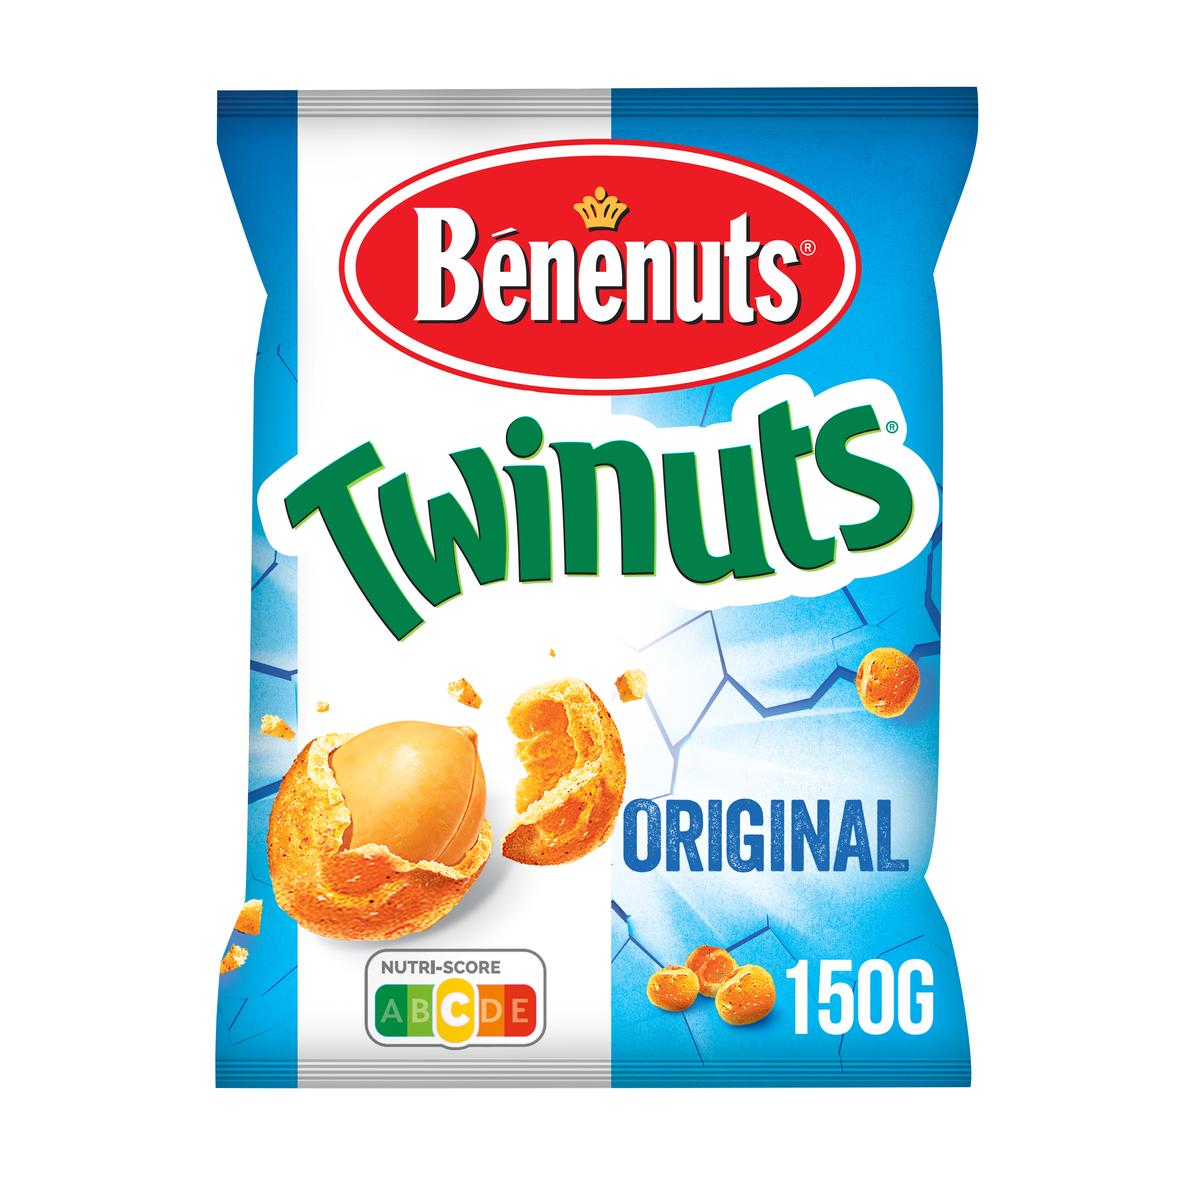 PUB Twinuts Benenuts 